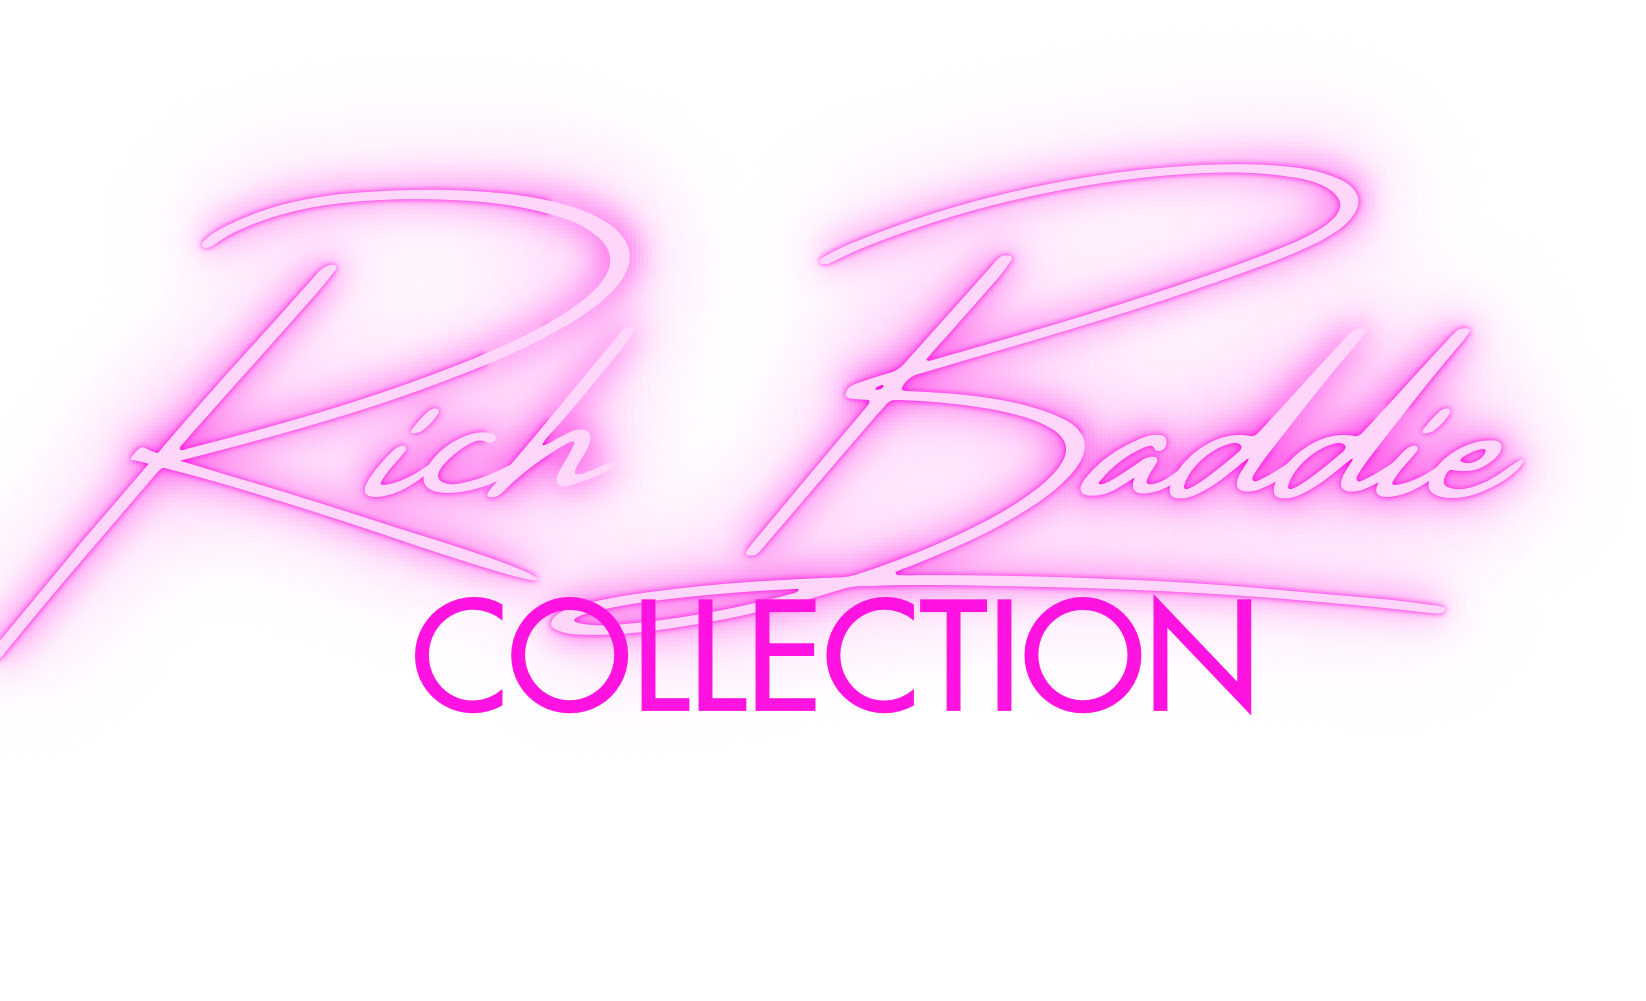 Rich Baddie Collection